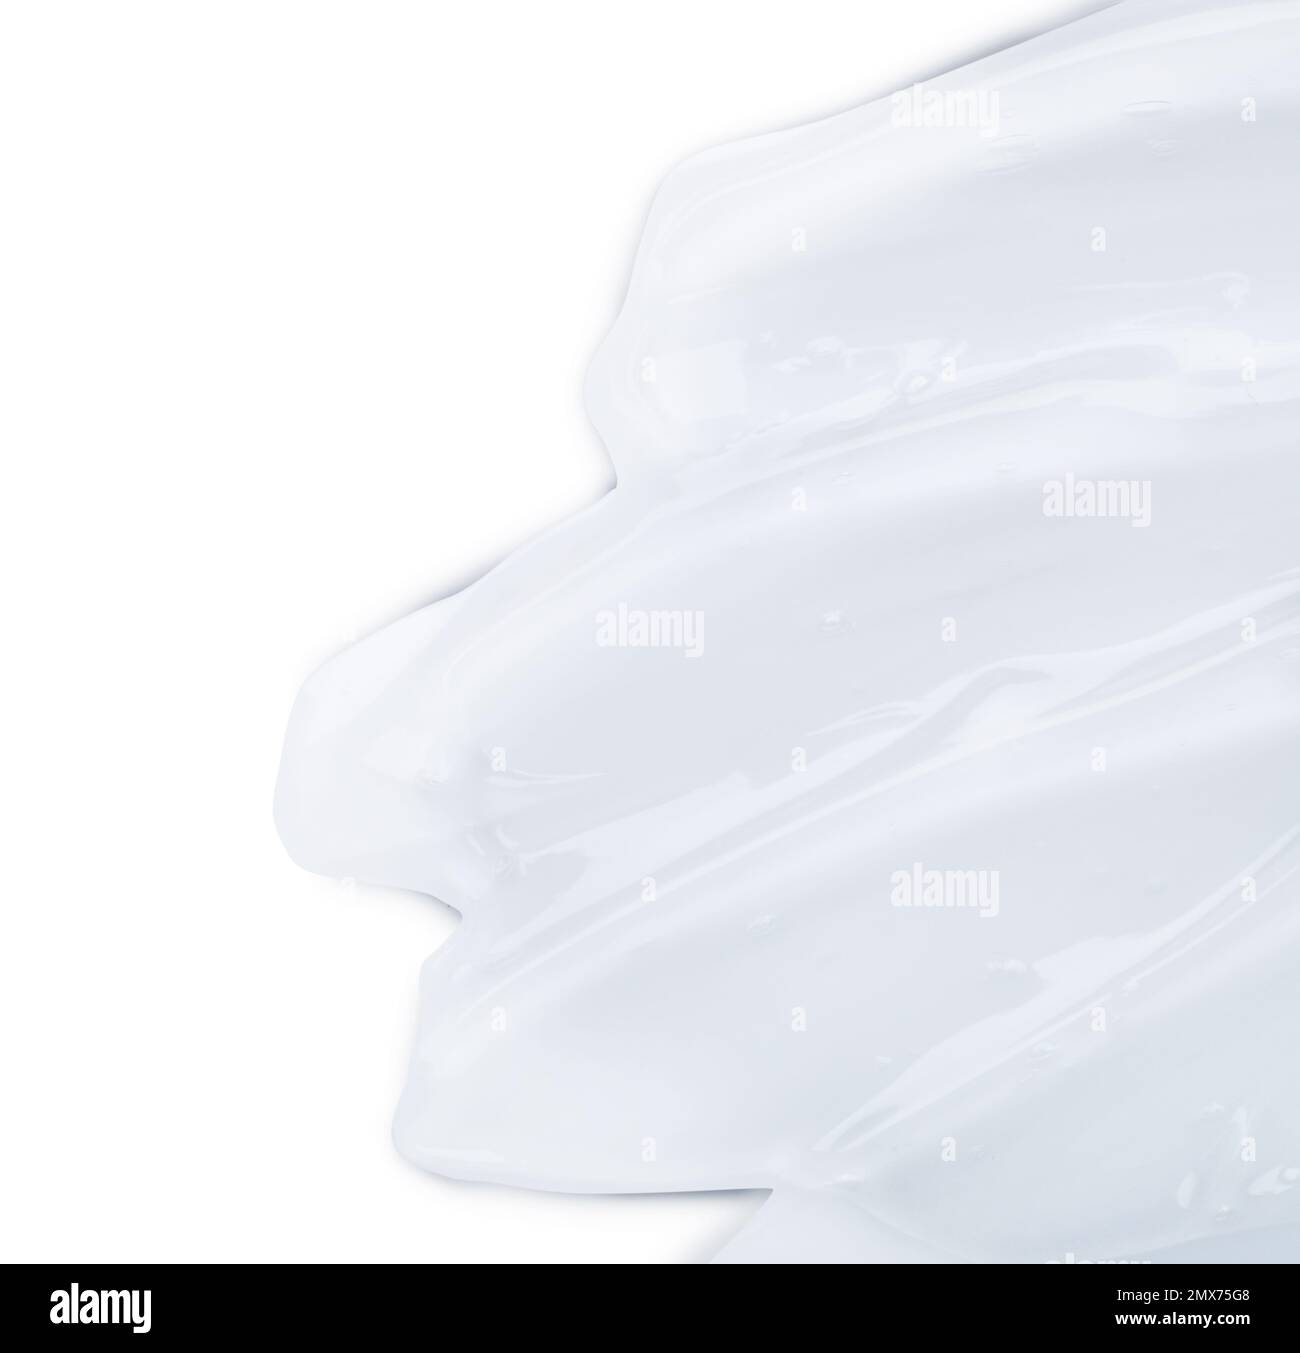 Campione di gel cosmetico trasparente su sfondo chiaro, vista dall'alto Foto Stock